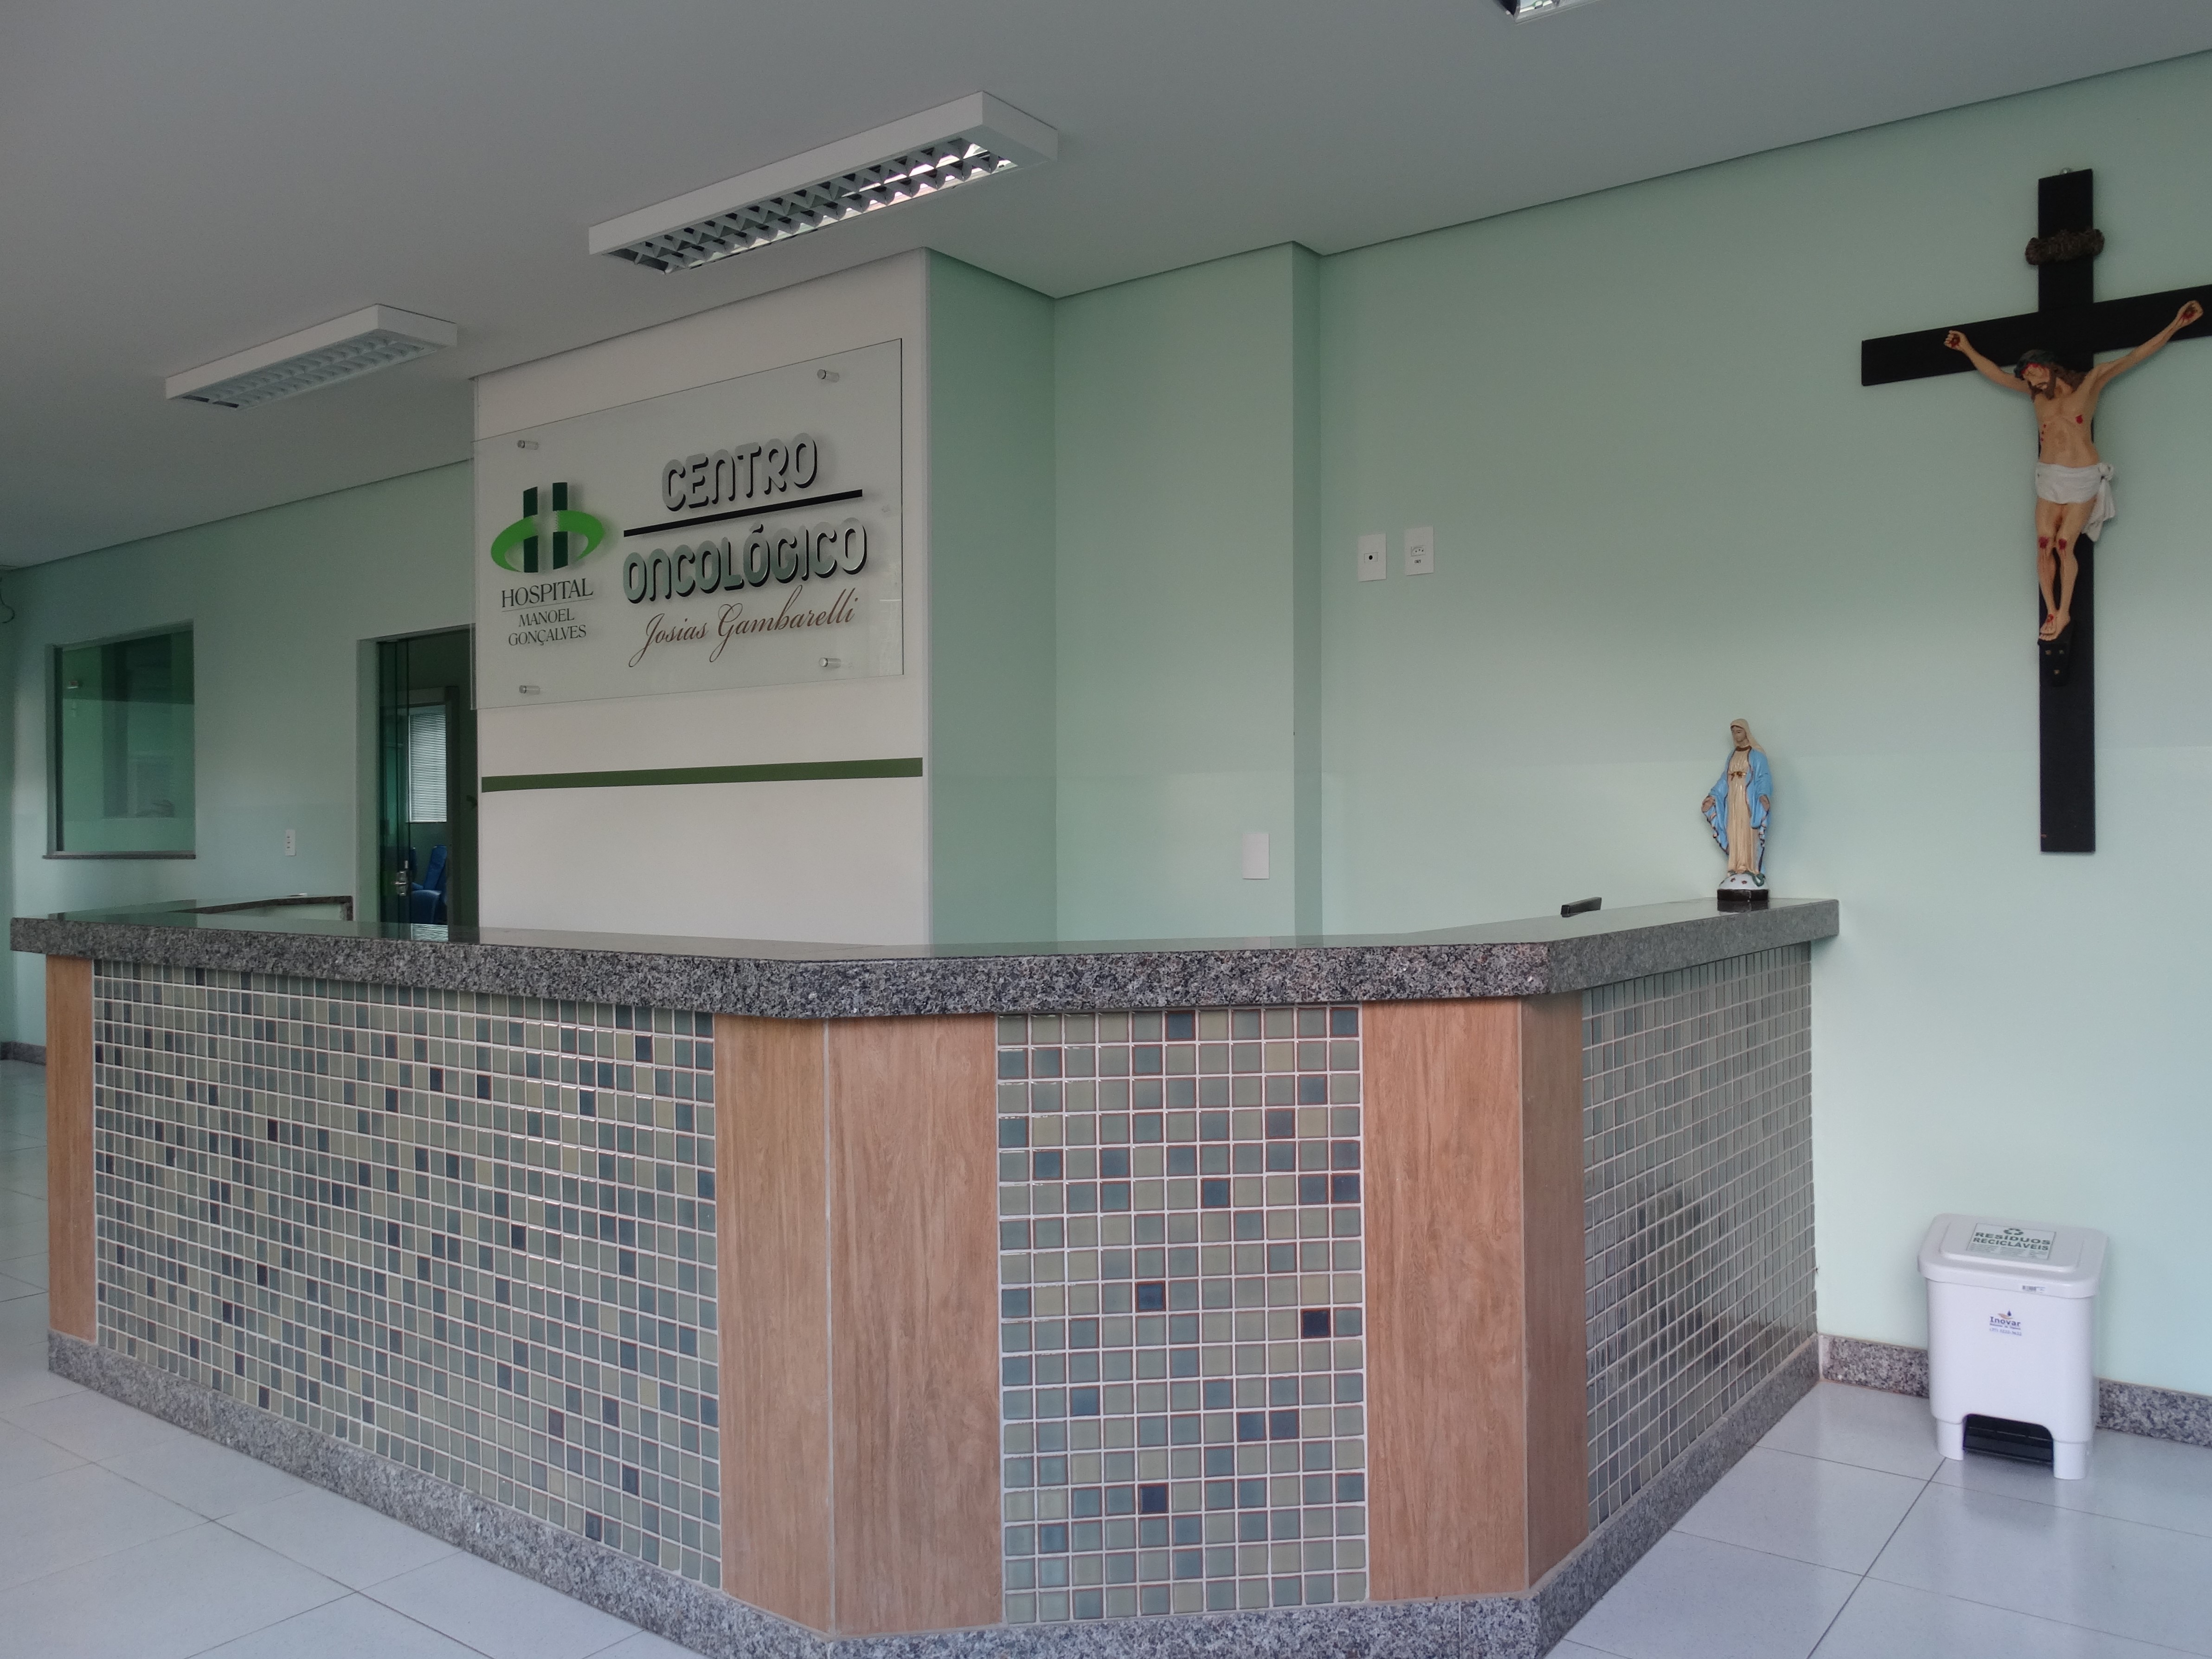 Anunciado para março, Centro Oncológico de Itaúna tem funcionamento indefinido em meio à COVID-19